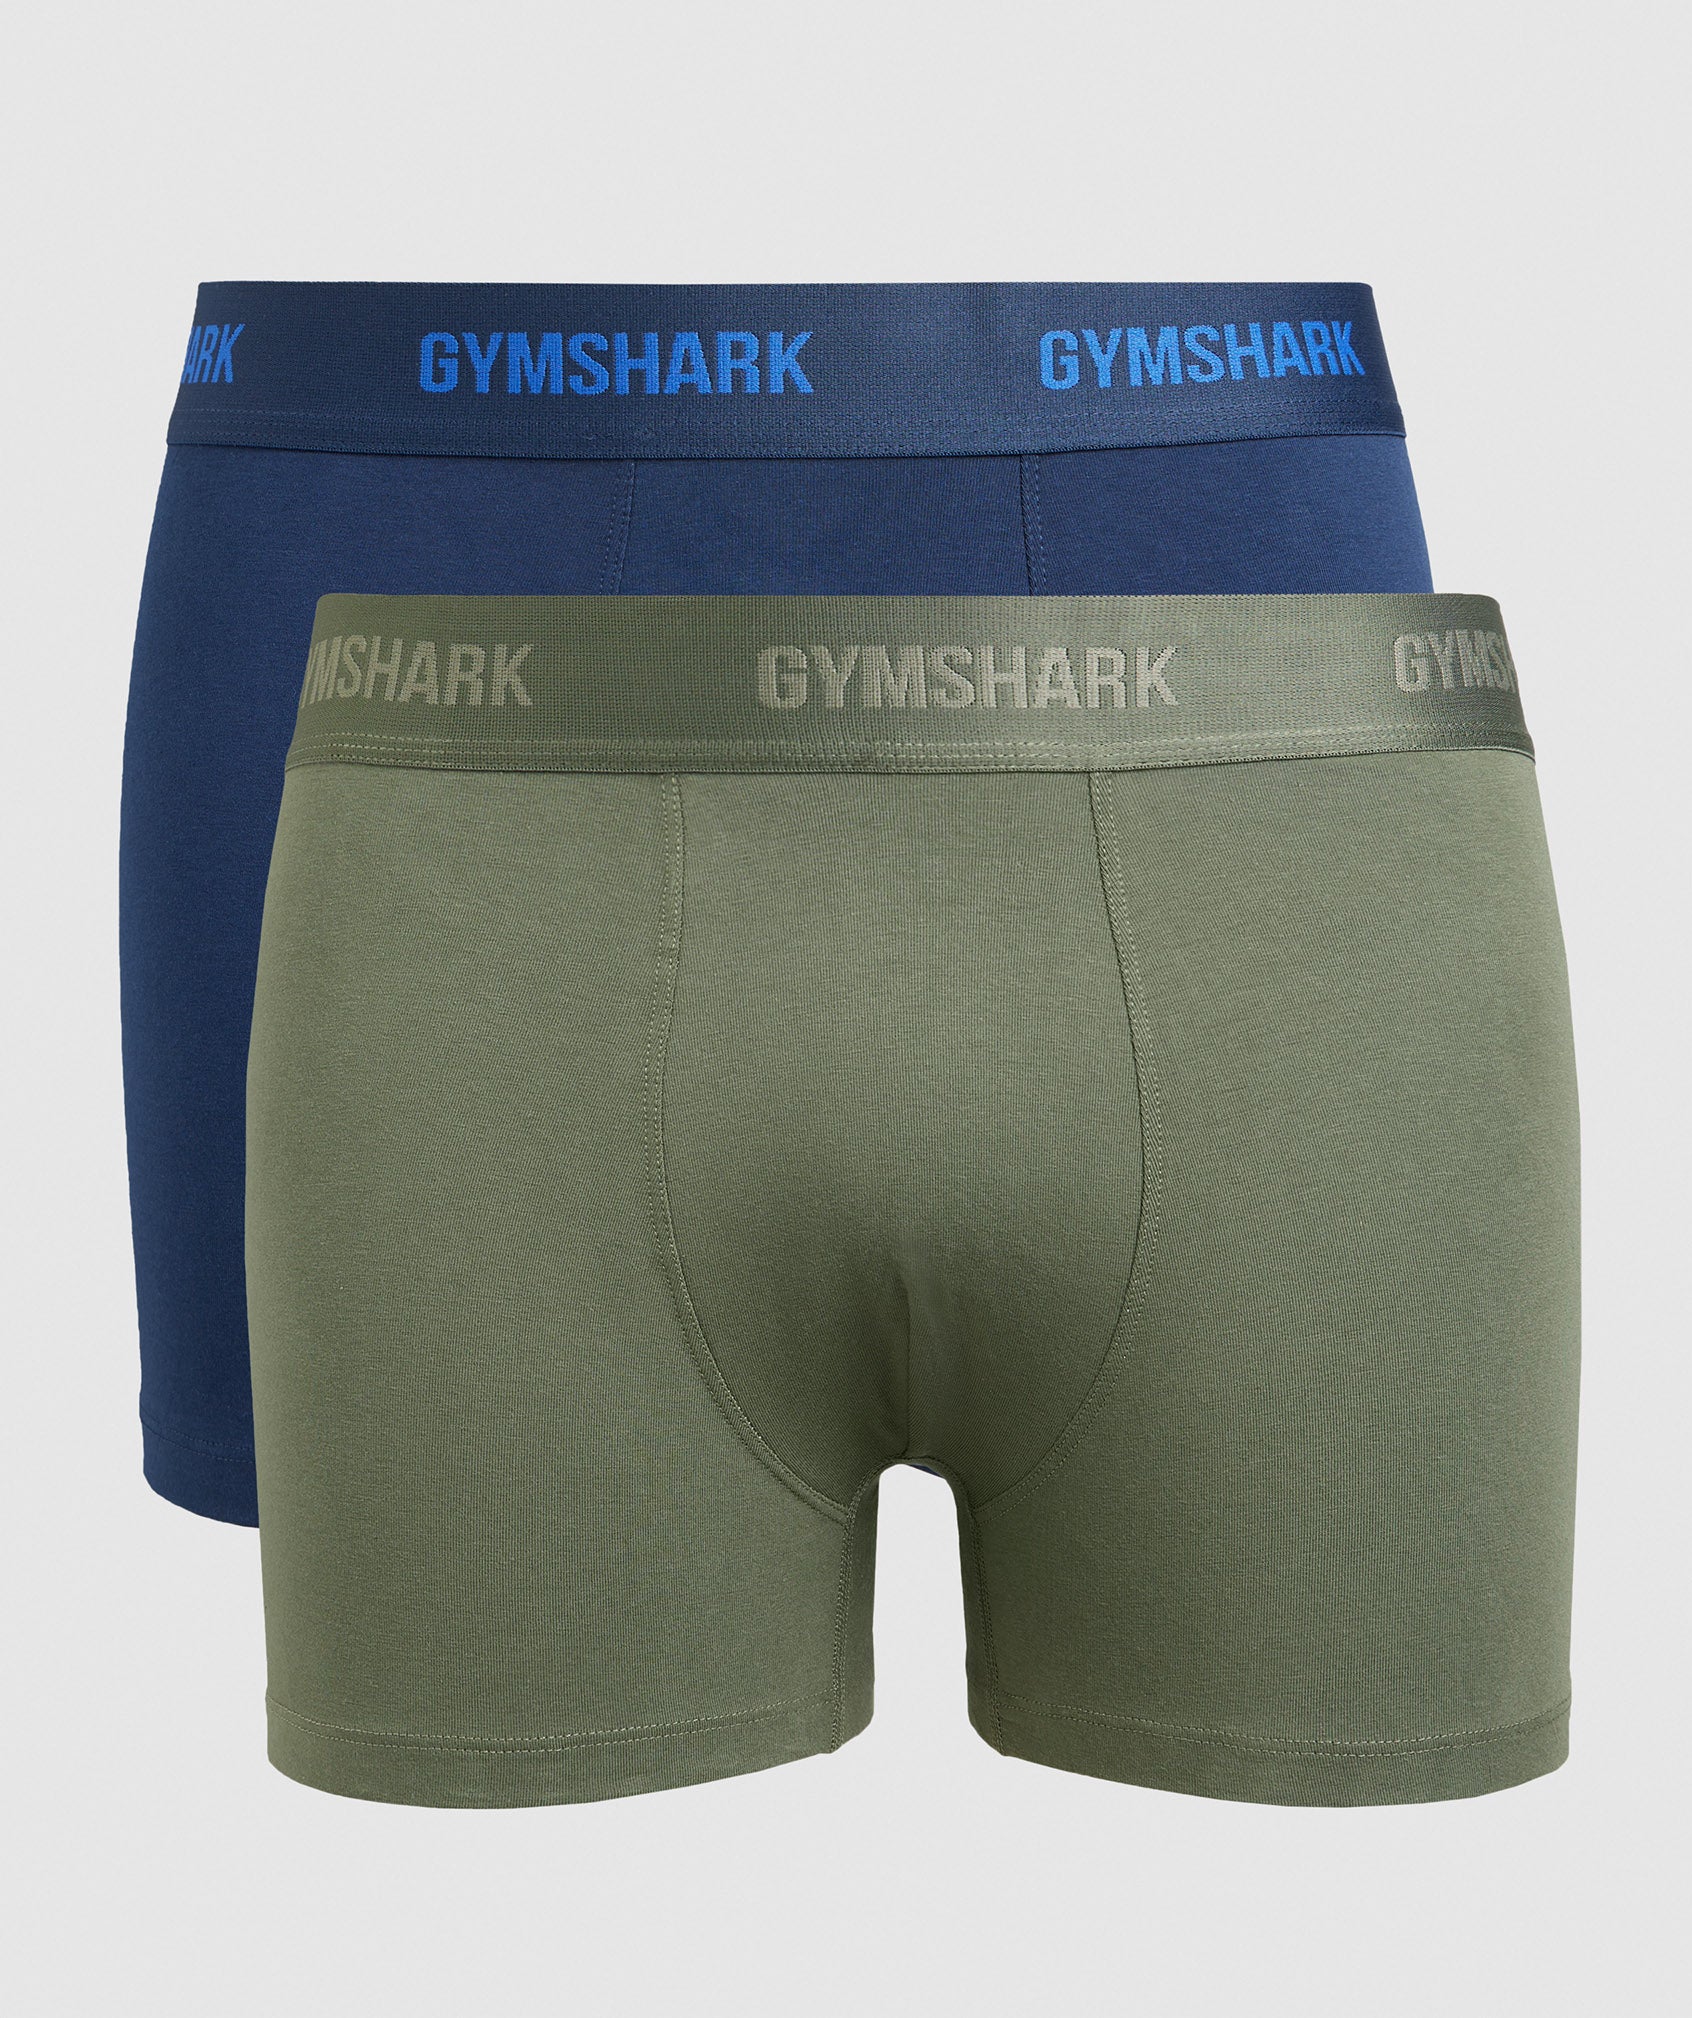 Gymshark Sports Tech Boxer 2 PK - Navy/Medium Grey